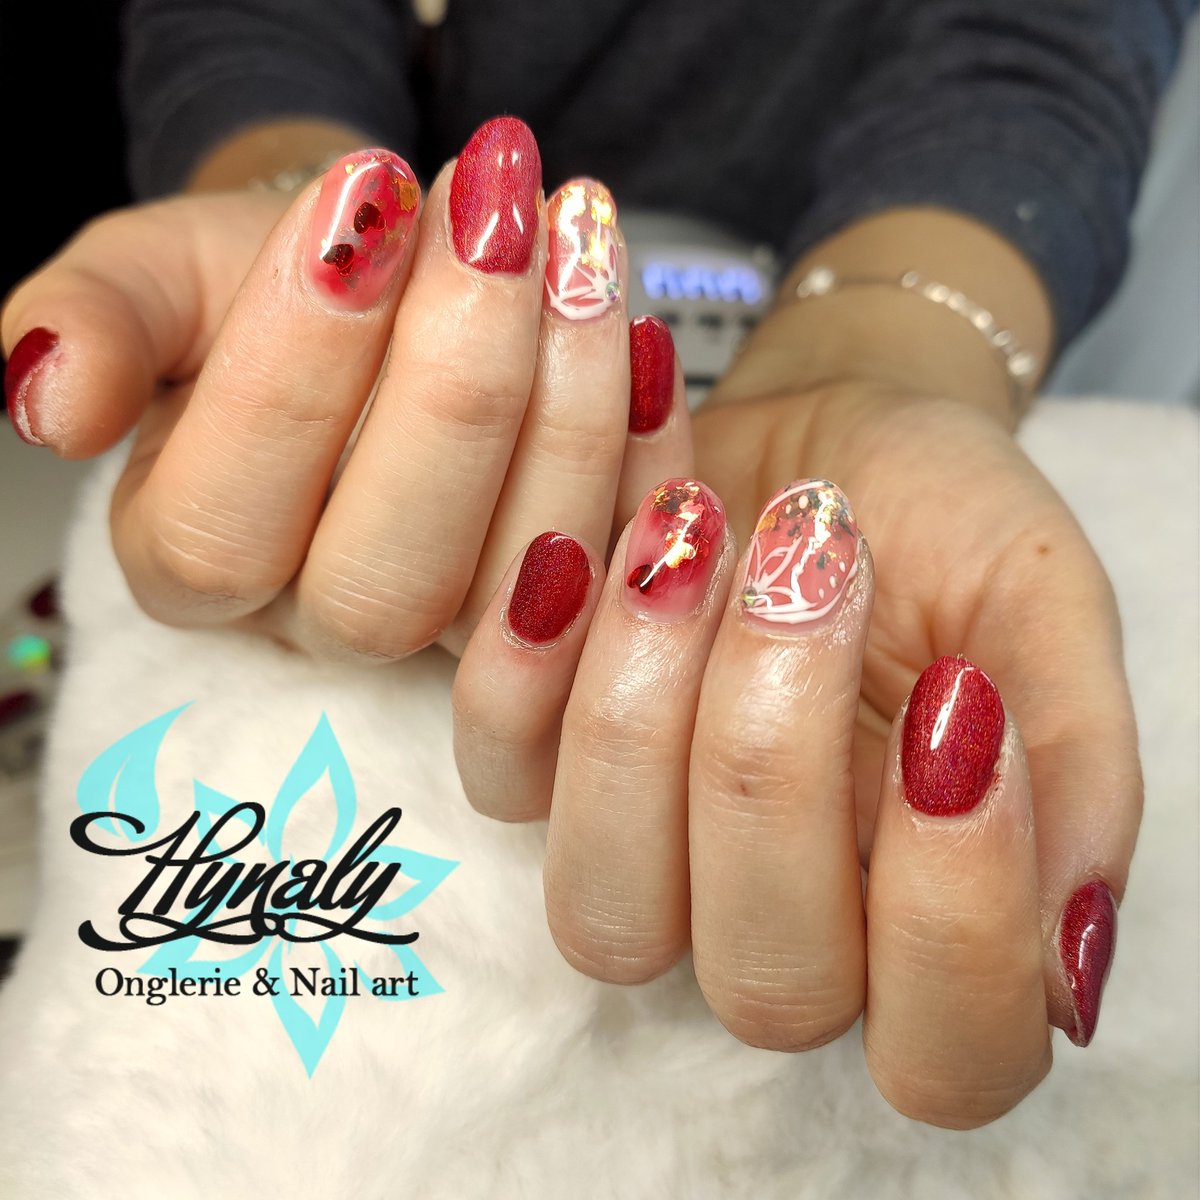 Valentine nails (on naturalnails )
❤️🥰

#nails
#nailart
#valentinenails